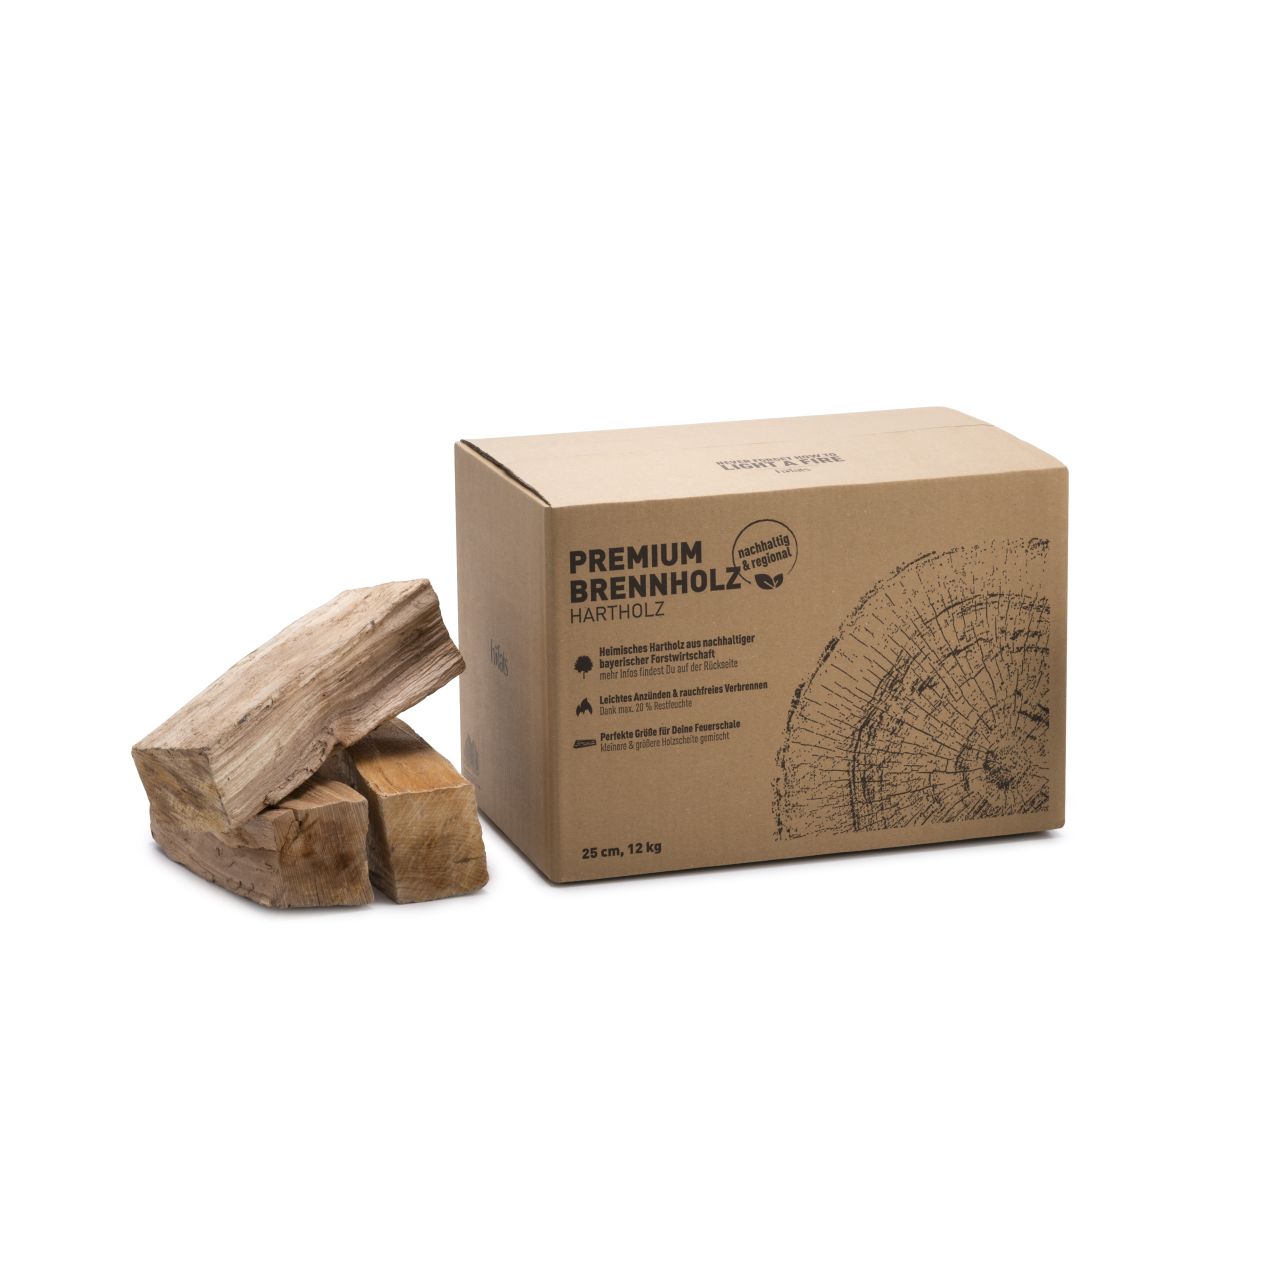 Premium Brennholz ca. 25 cm Scheite ca. 12 kg im Karton - 27 dm³ - Höfats